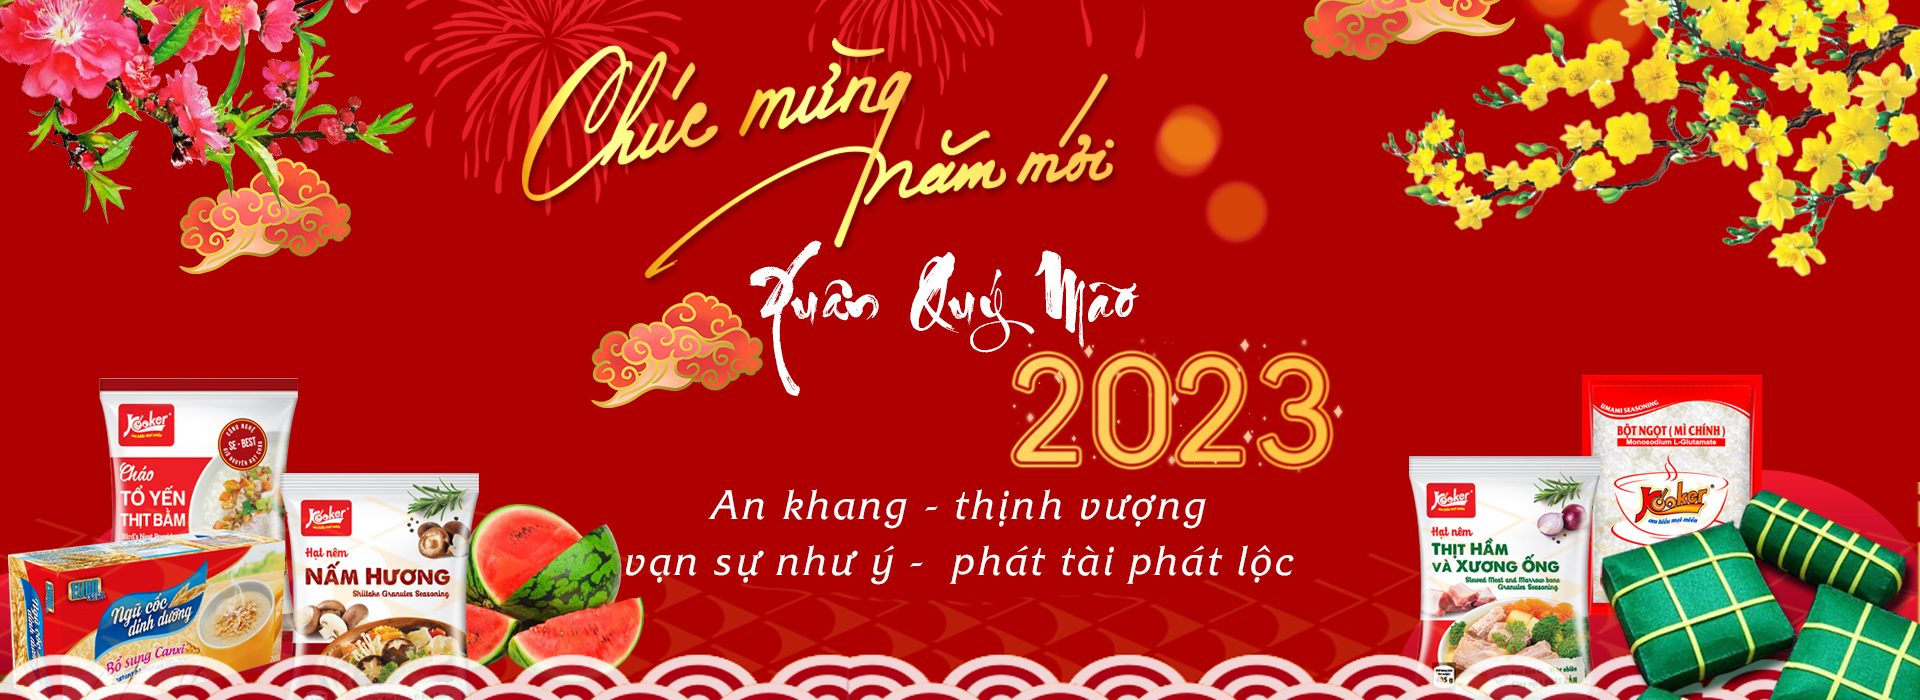 banner web KOOKER Tết AL 1920x768 02